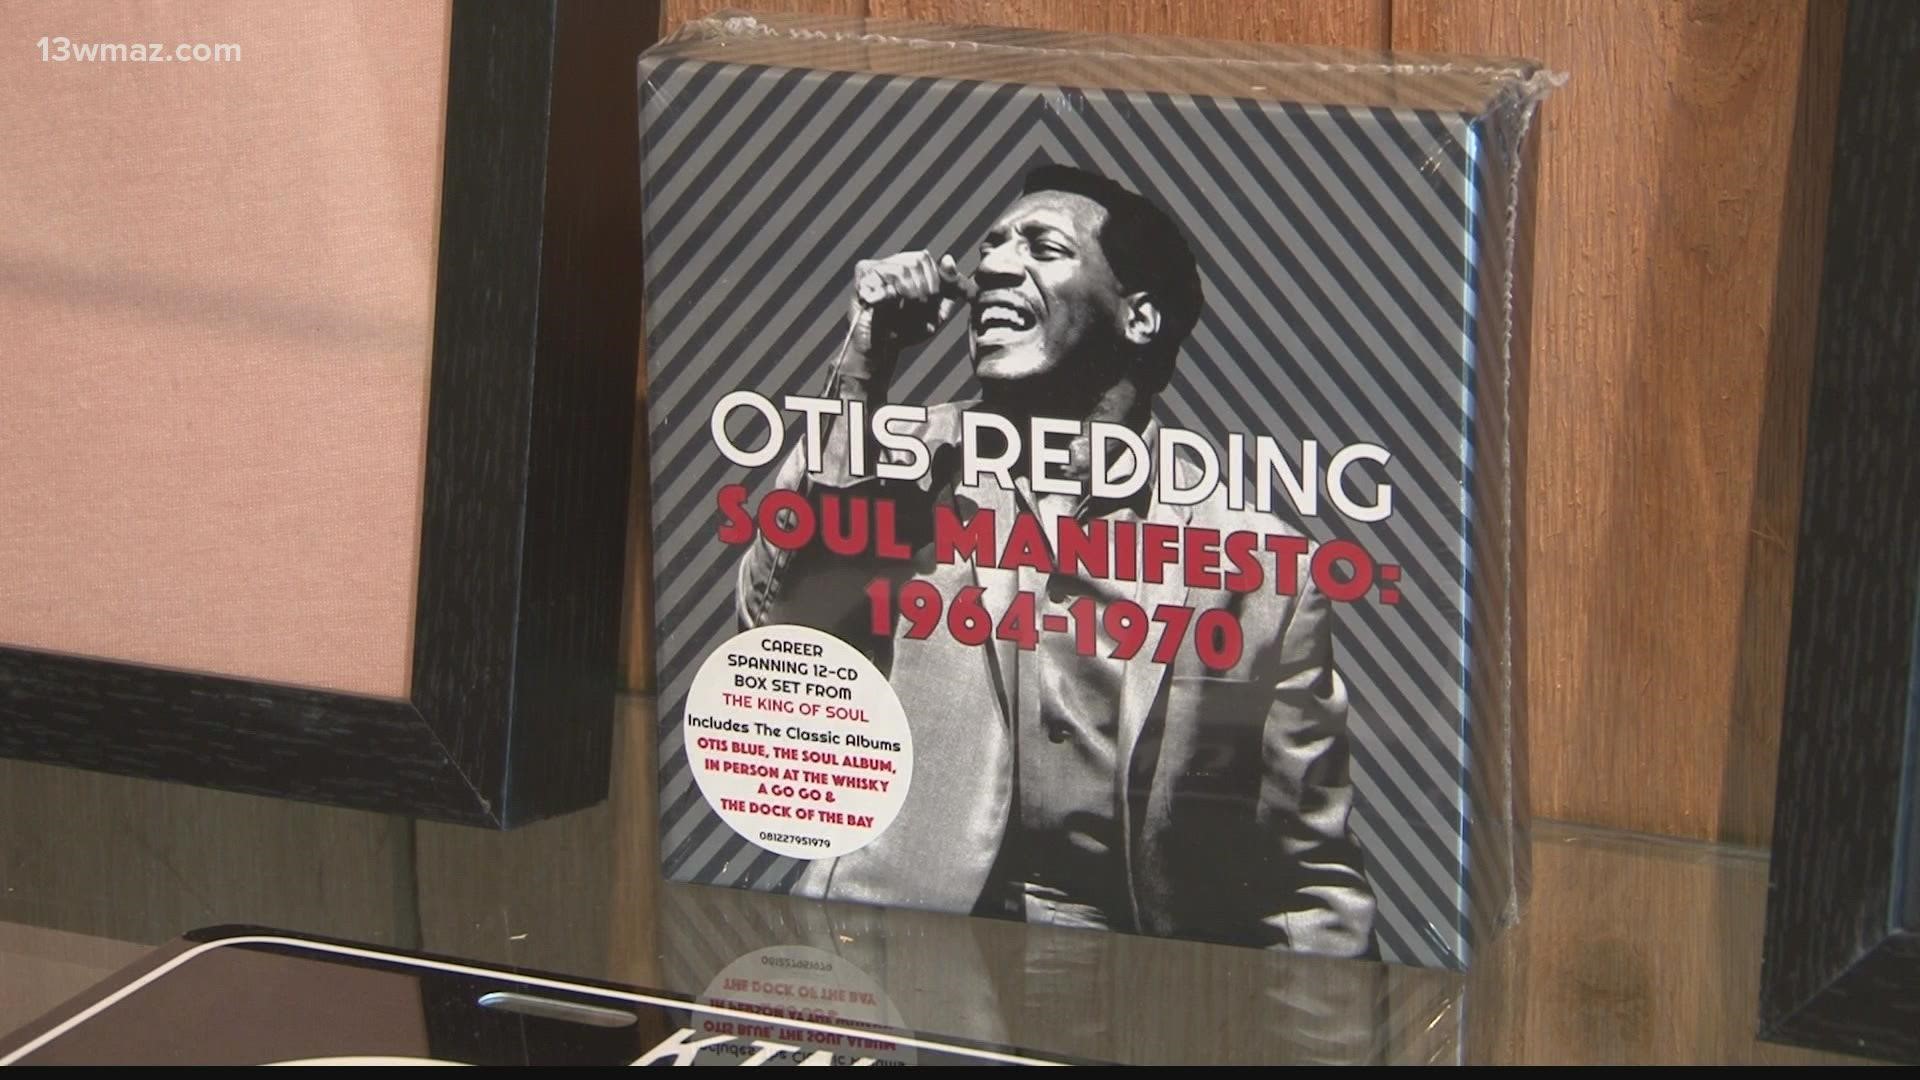 The Otis Redding Museum honored Redding by unveiling new memorabilia